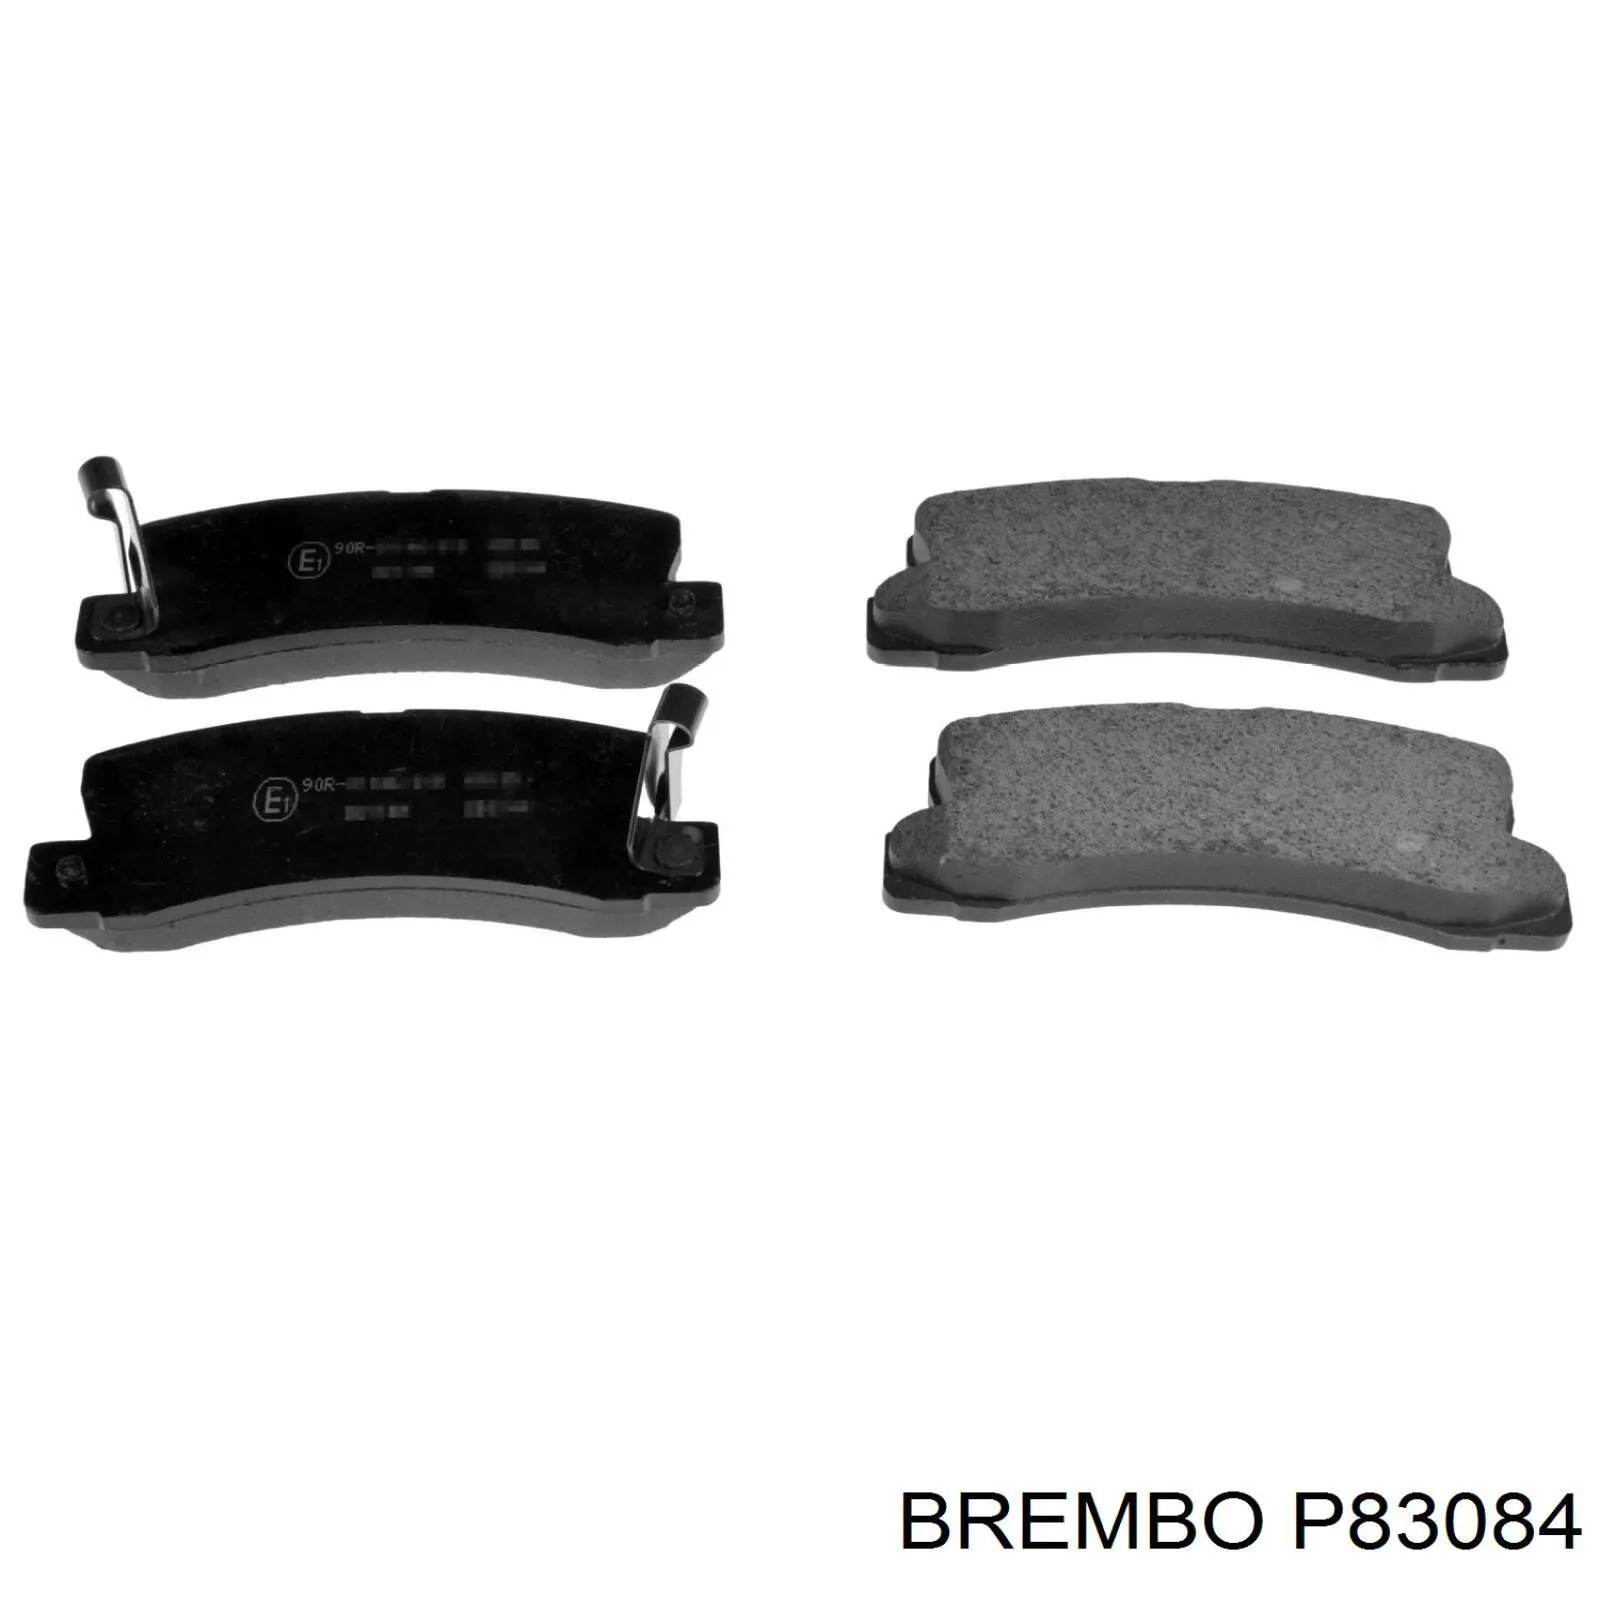 P83084 Brembo колодки тормозные задние дисковые